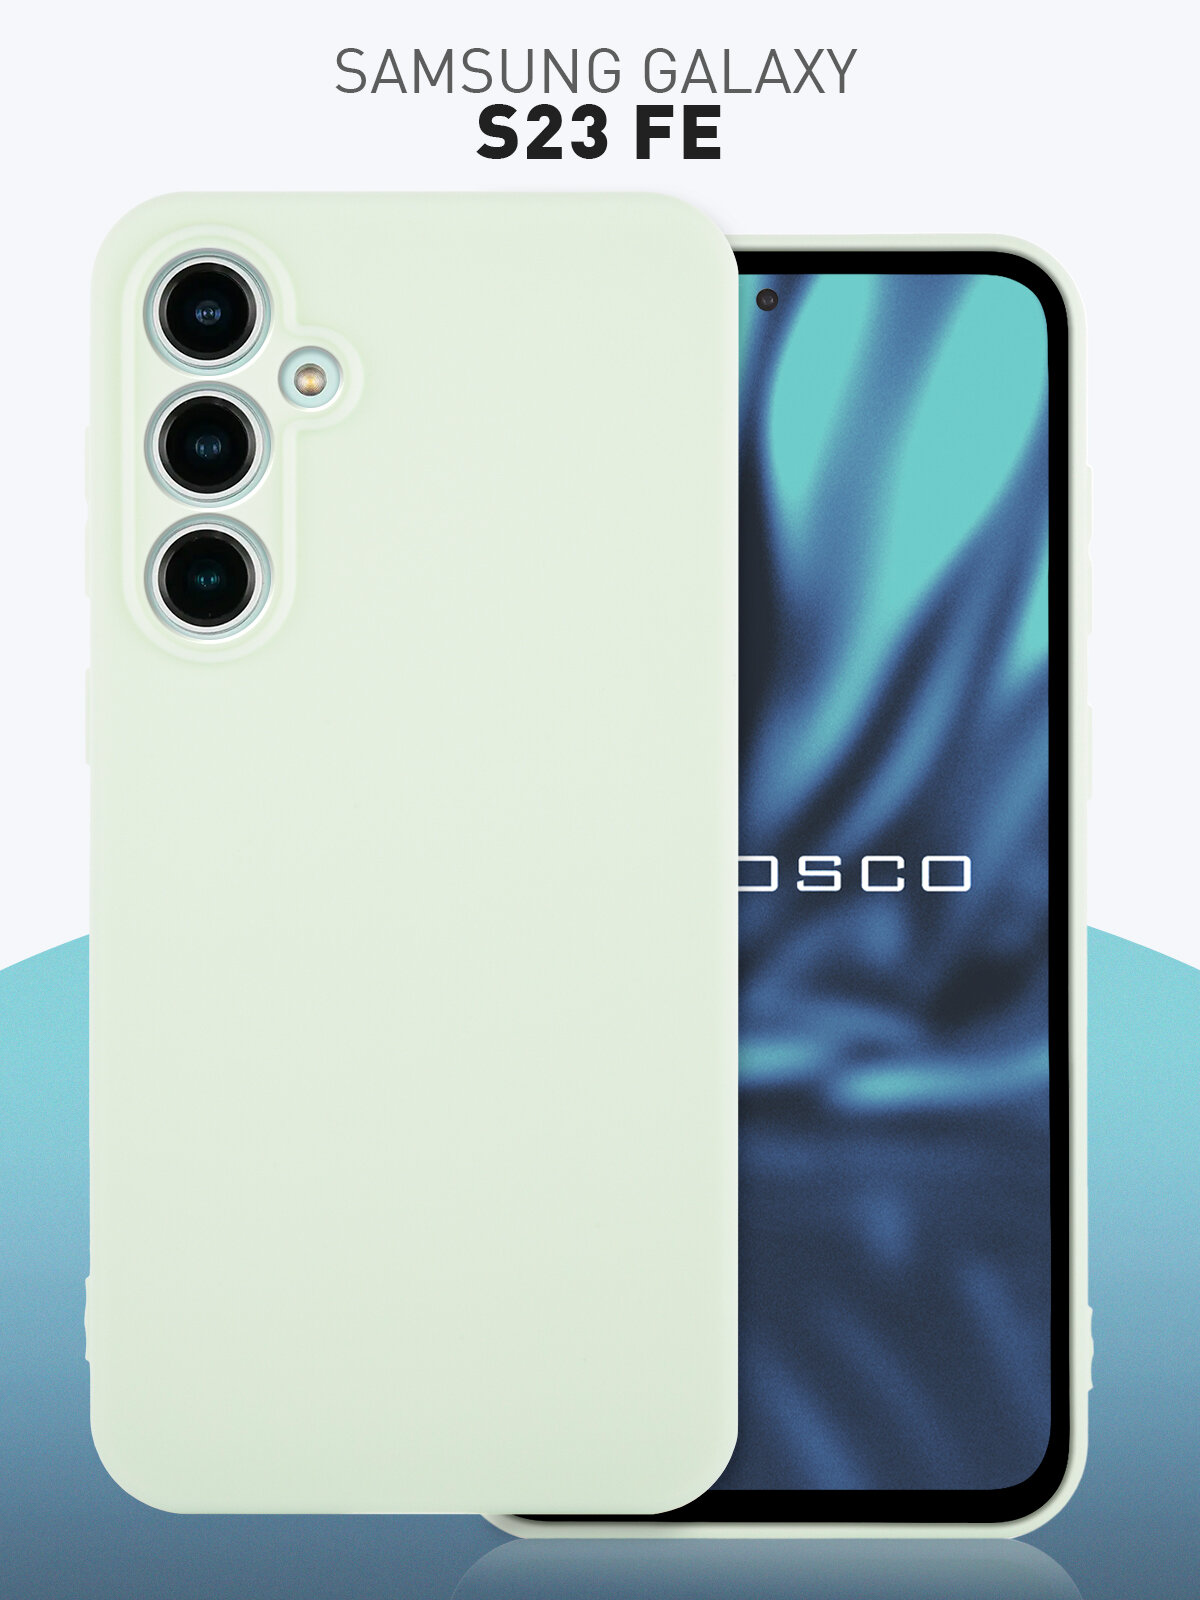 Чехол ROSCO для Samsung Galaxy S23 FE (Самсунг Галакси С23 ФЕ), силиконовый чехол, тонкий, матовое покрытие, защита модуля камер, светло-зеленый